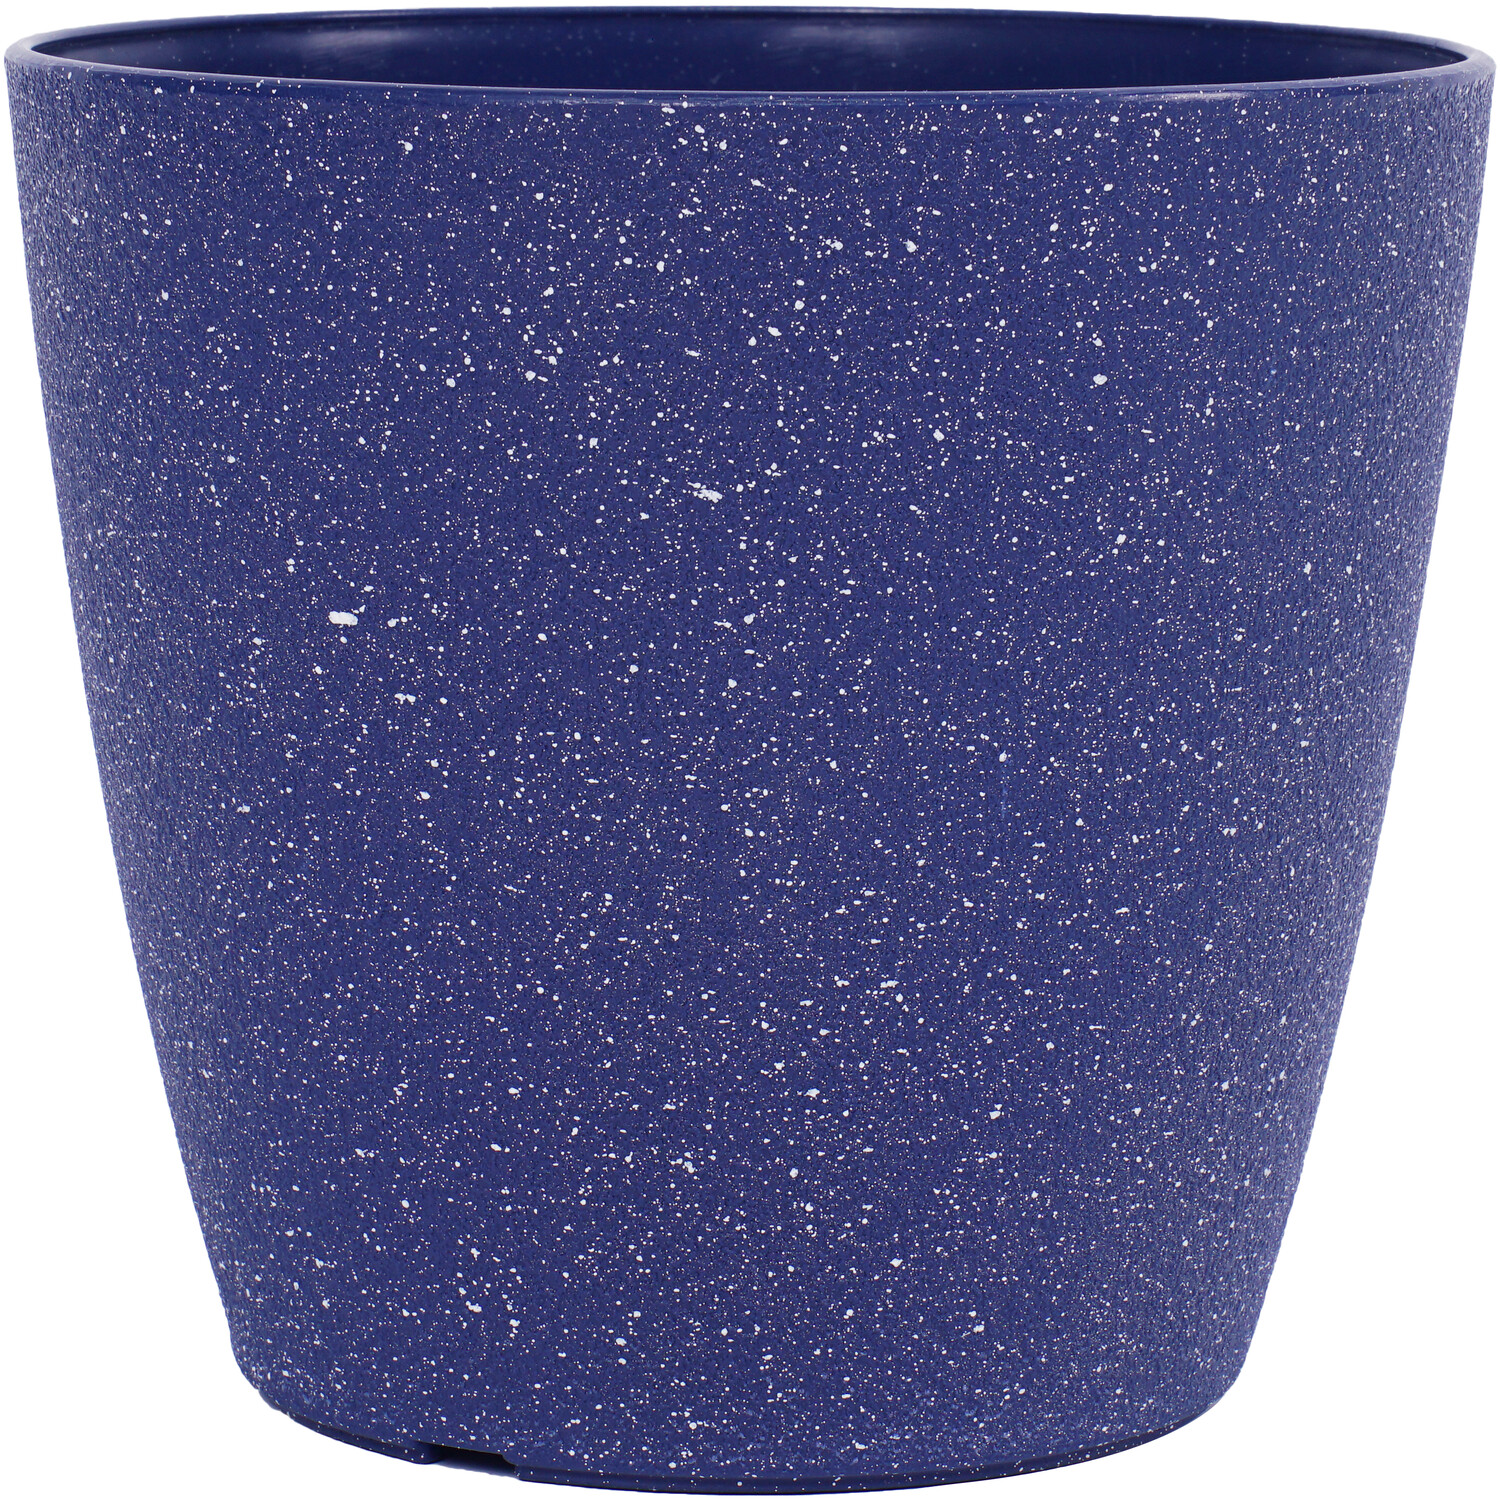 Blue Textured Plastic Plant Pot 18cm Image 1